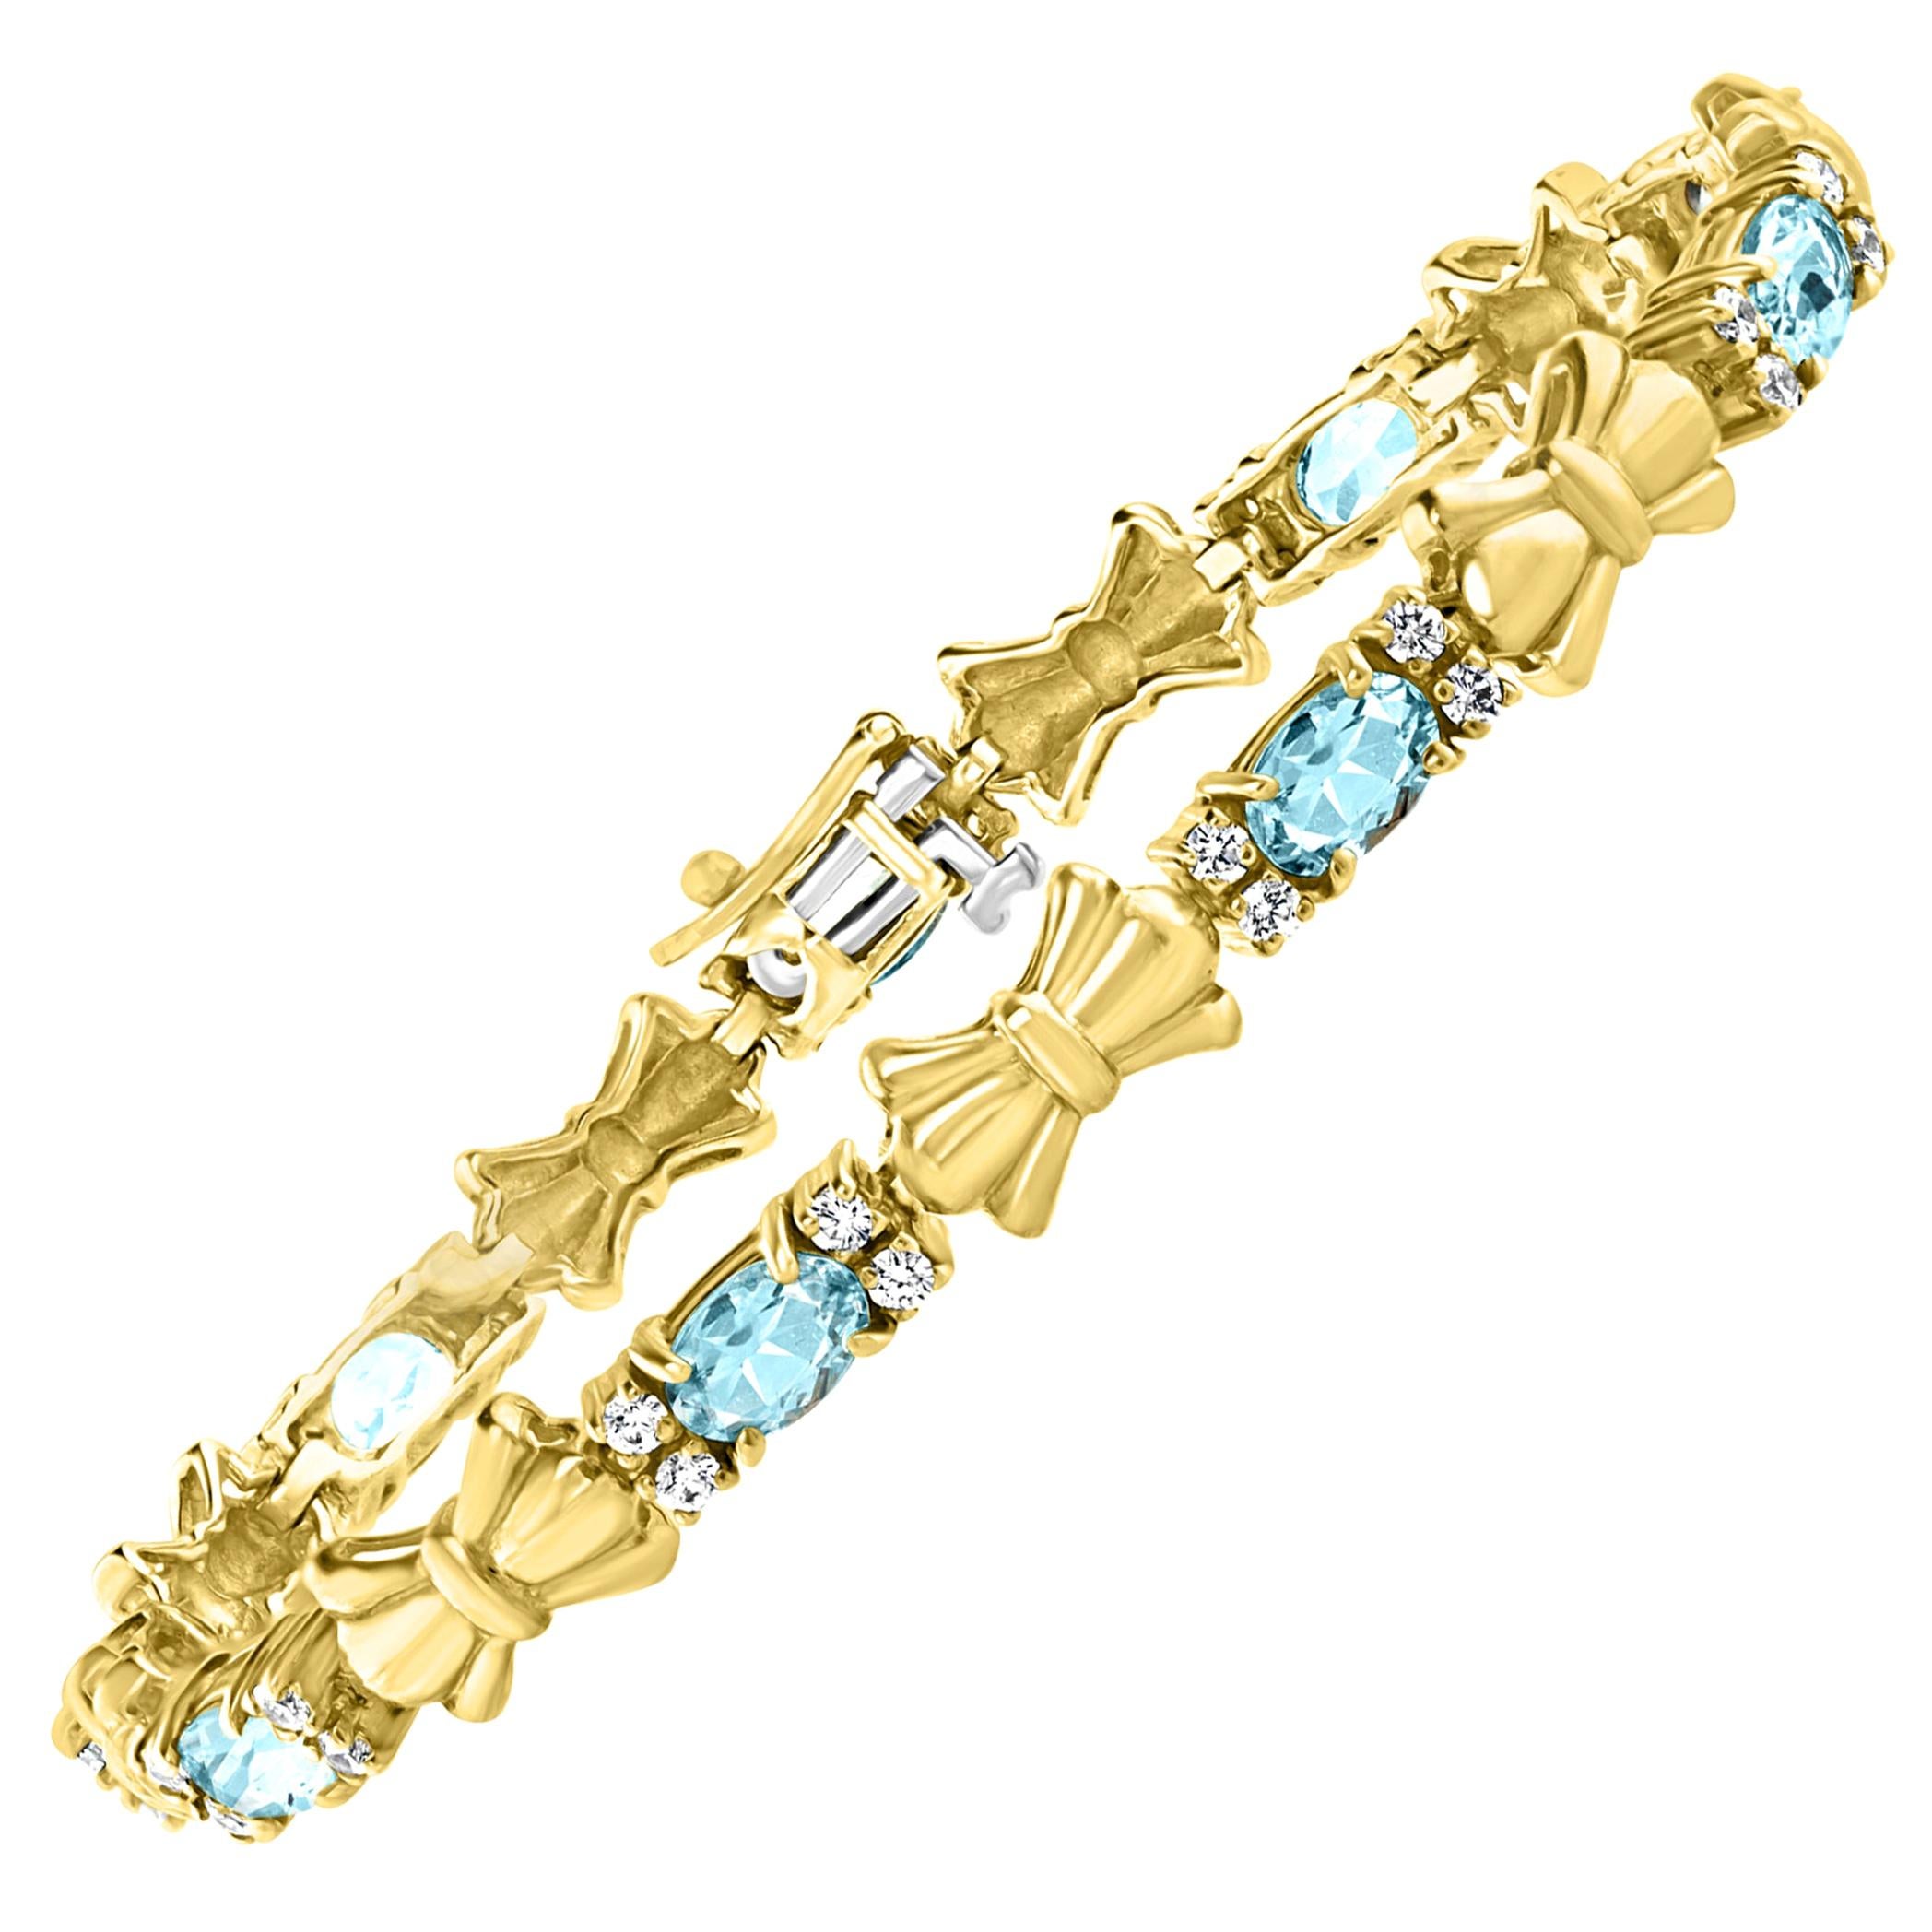 4 Carat Natural Aquamarine and Diamond Tennis Bracelet 10 Karat Yellow Gold